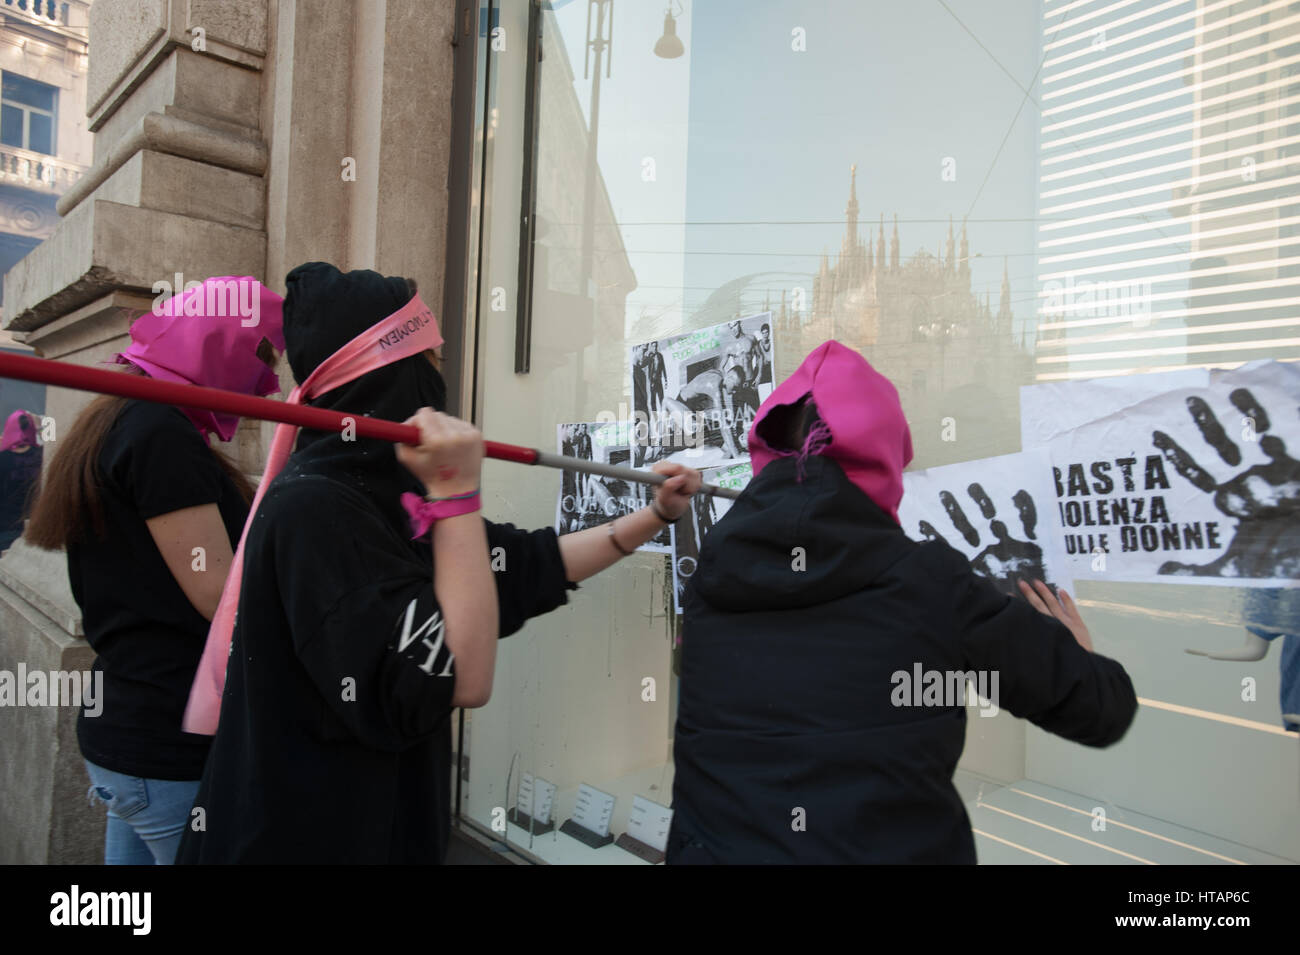 Mailand, Italien. 8. März, Tag der Frau. Protest für die Rechte der Frau "una di meno - Niemand weniger". Stockfoto